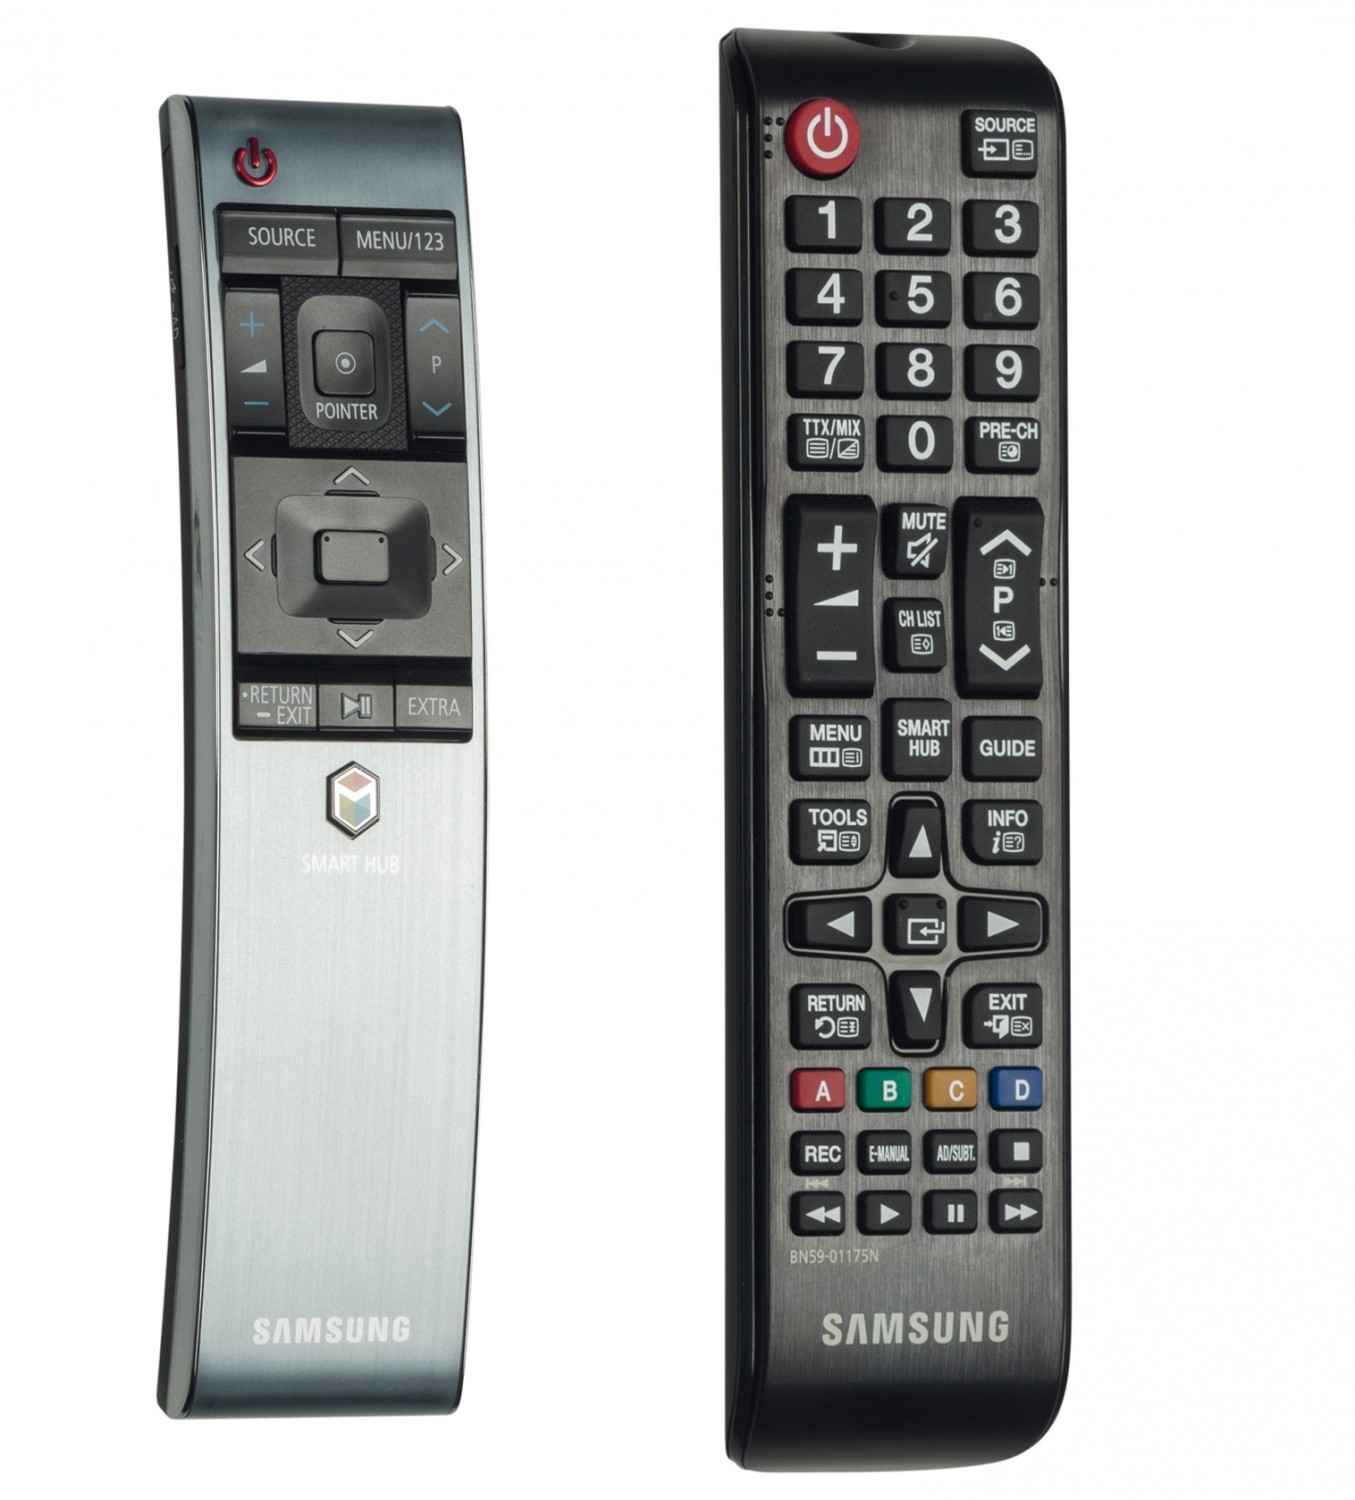 Samsung ue55js8090 saturn - Unsere Produkte unter den Samsung ue55js8090 saturn